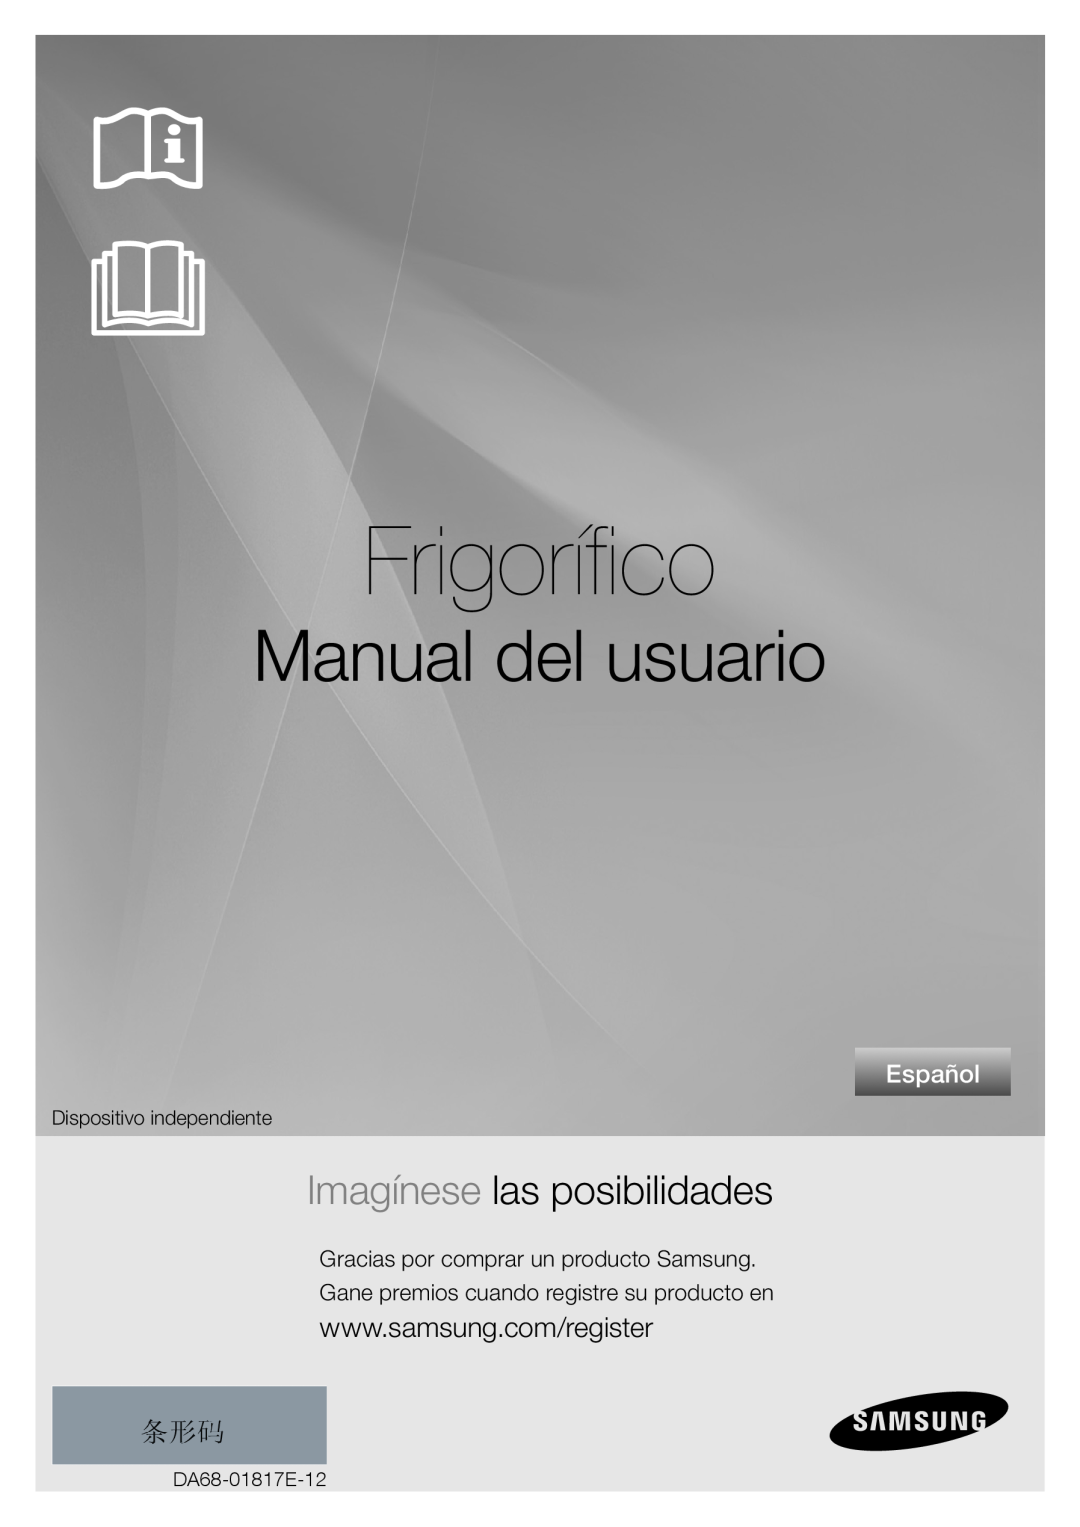 Samsung RL67VCSH1/XES, RL62ZBSH1/XES manual Frigorífico, Manual del usuario, Imagínese las posibilidades, Español 